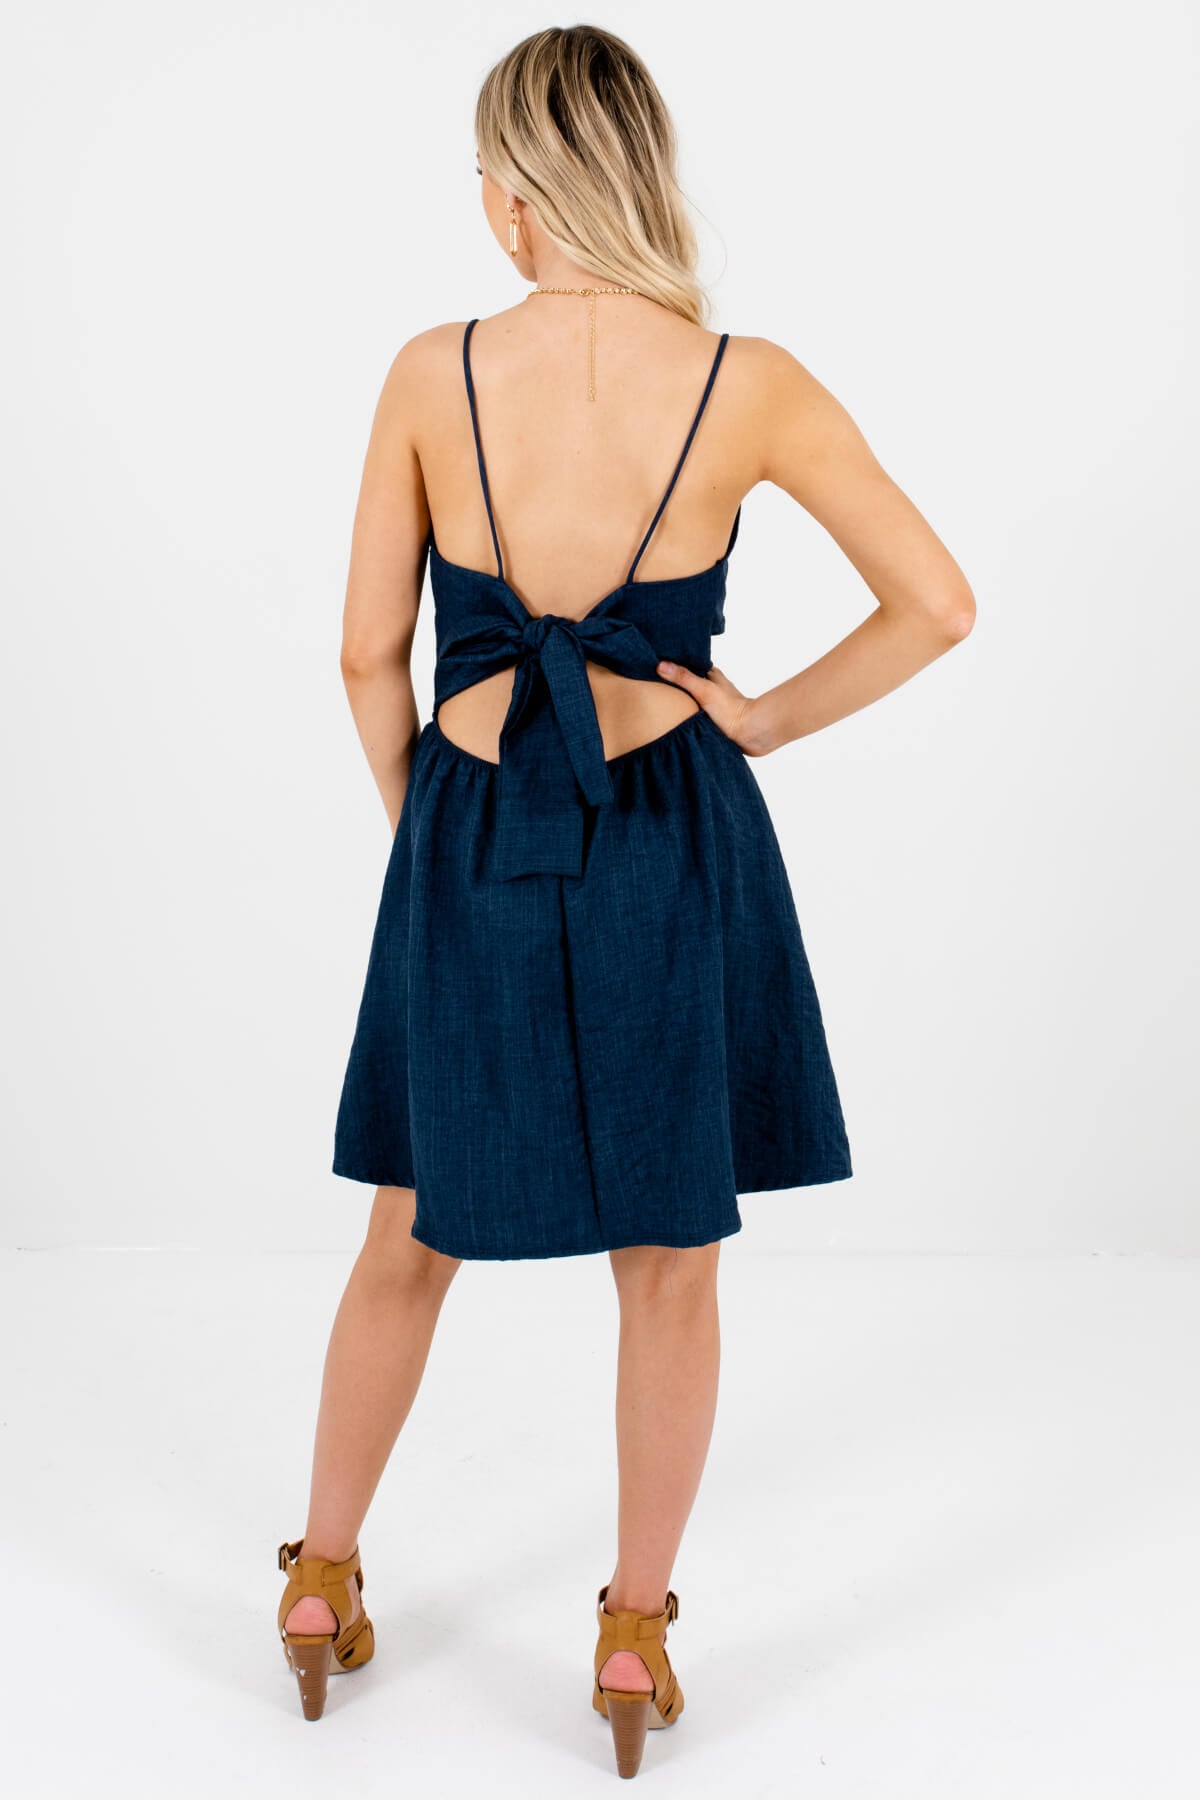 Women's Navy Blue Self-Tie Open Back Boutique Mini Dress